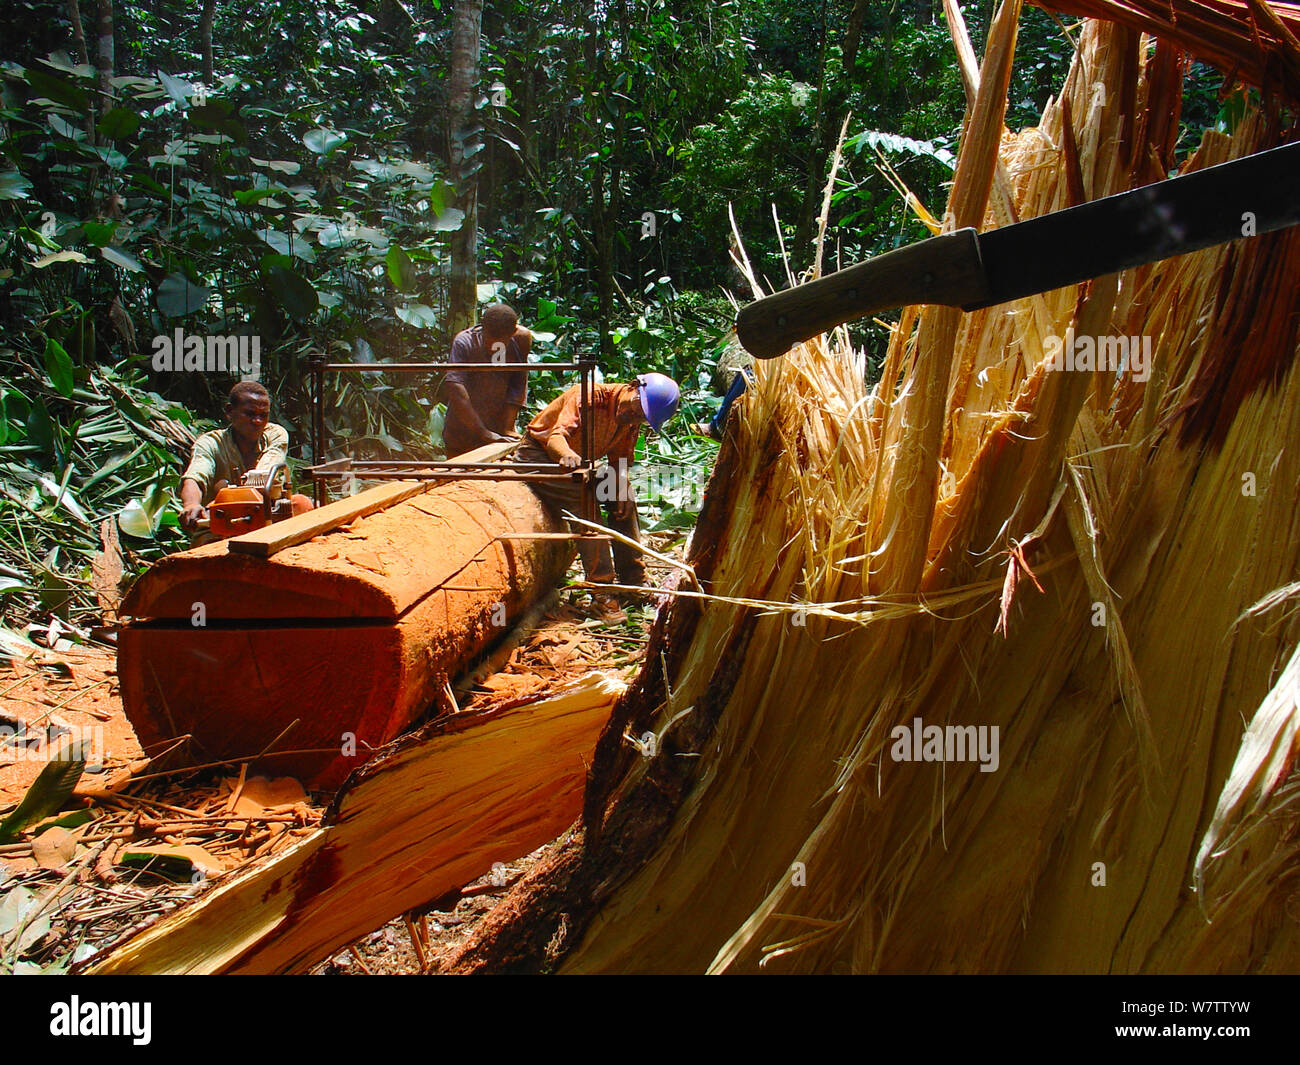 Selva africana de minas - hombres serrar troncos de árboles de madera dura para hacer tablones. Al sur del Parque Nacional, Mbomo Odzala-Kokoua, República del Congo, mayo de 2005. Foto de stock